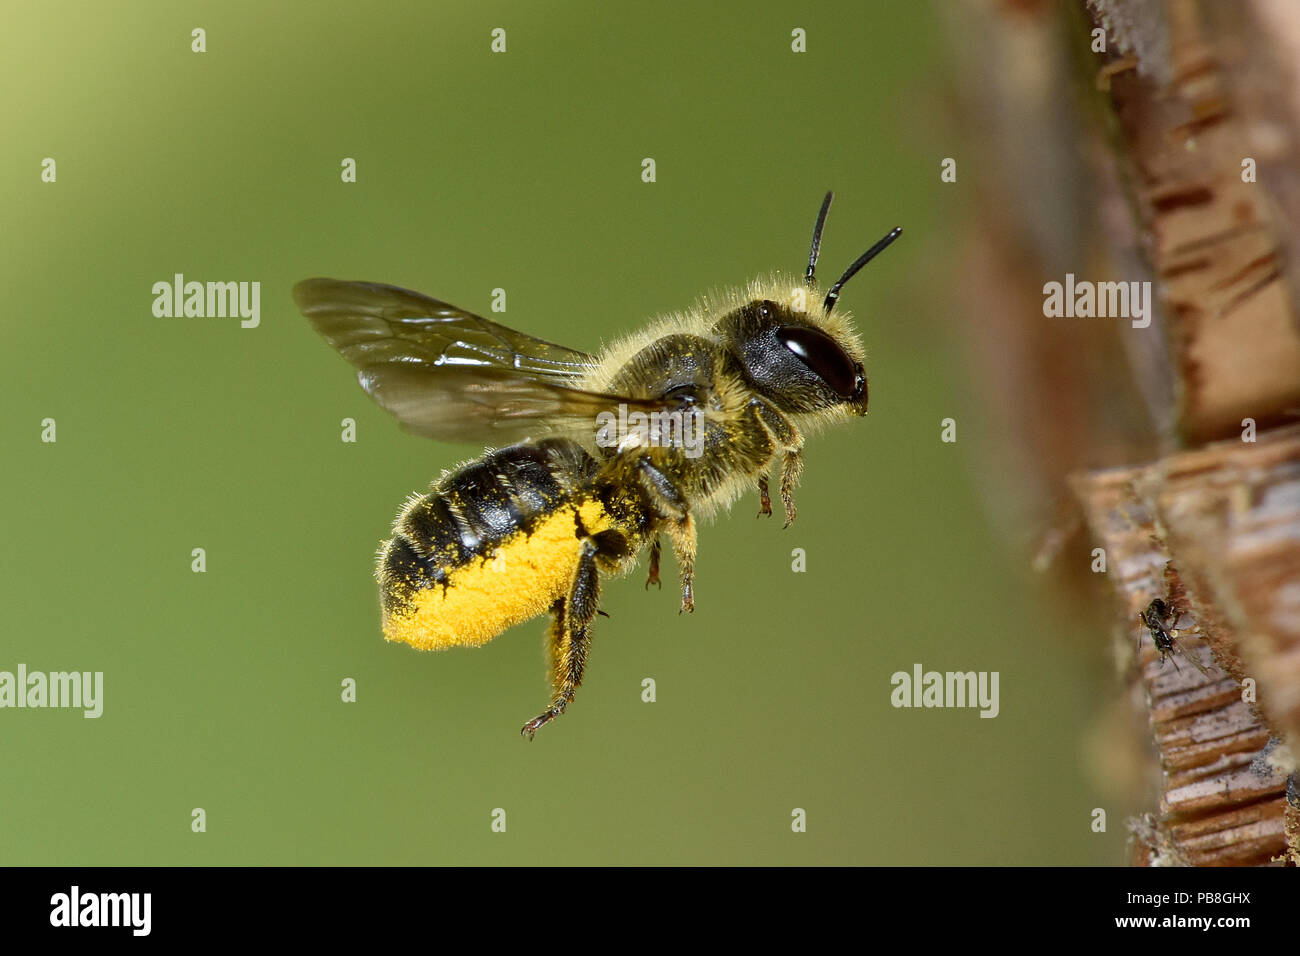 Blue Mason bee (Osmia leaiana) féminin, le CPCP a rempli de pollen, en vol de retour au nid dans le tube de bambou dans l'hôtel, jardin de l'abeille, Hertfordshire, Angleterre, Royaume-Uni, juin Banque D'Images